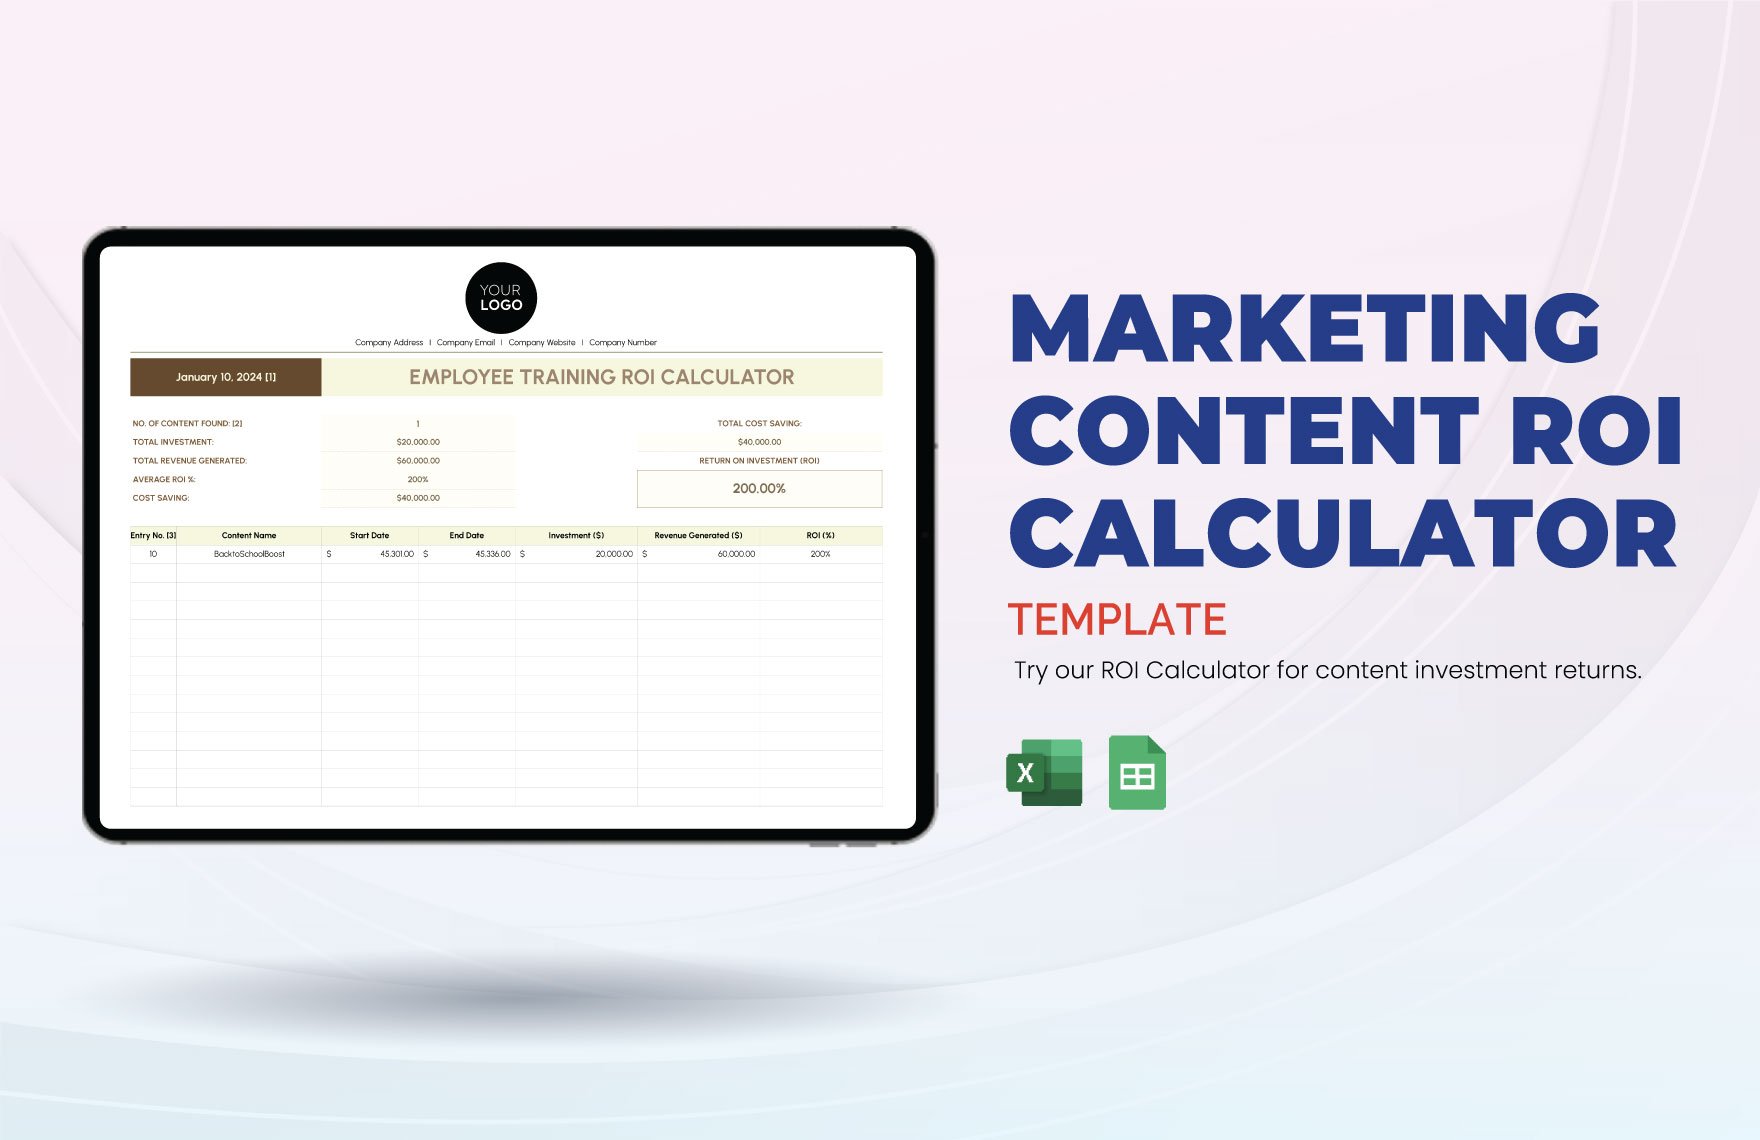 Marketing Content ROI Calculator Template